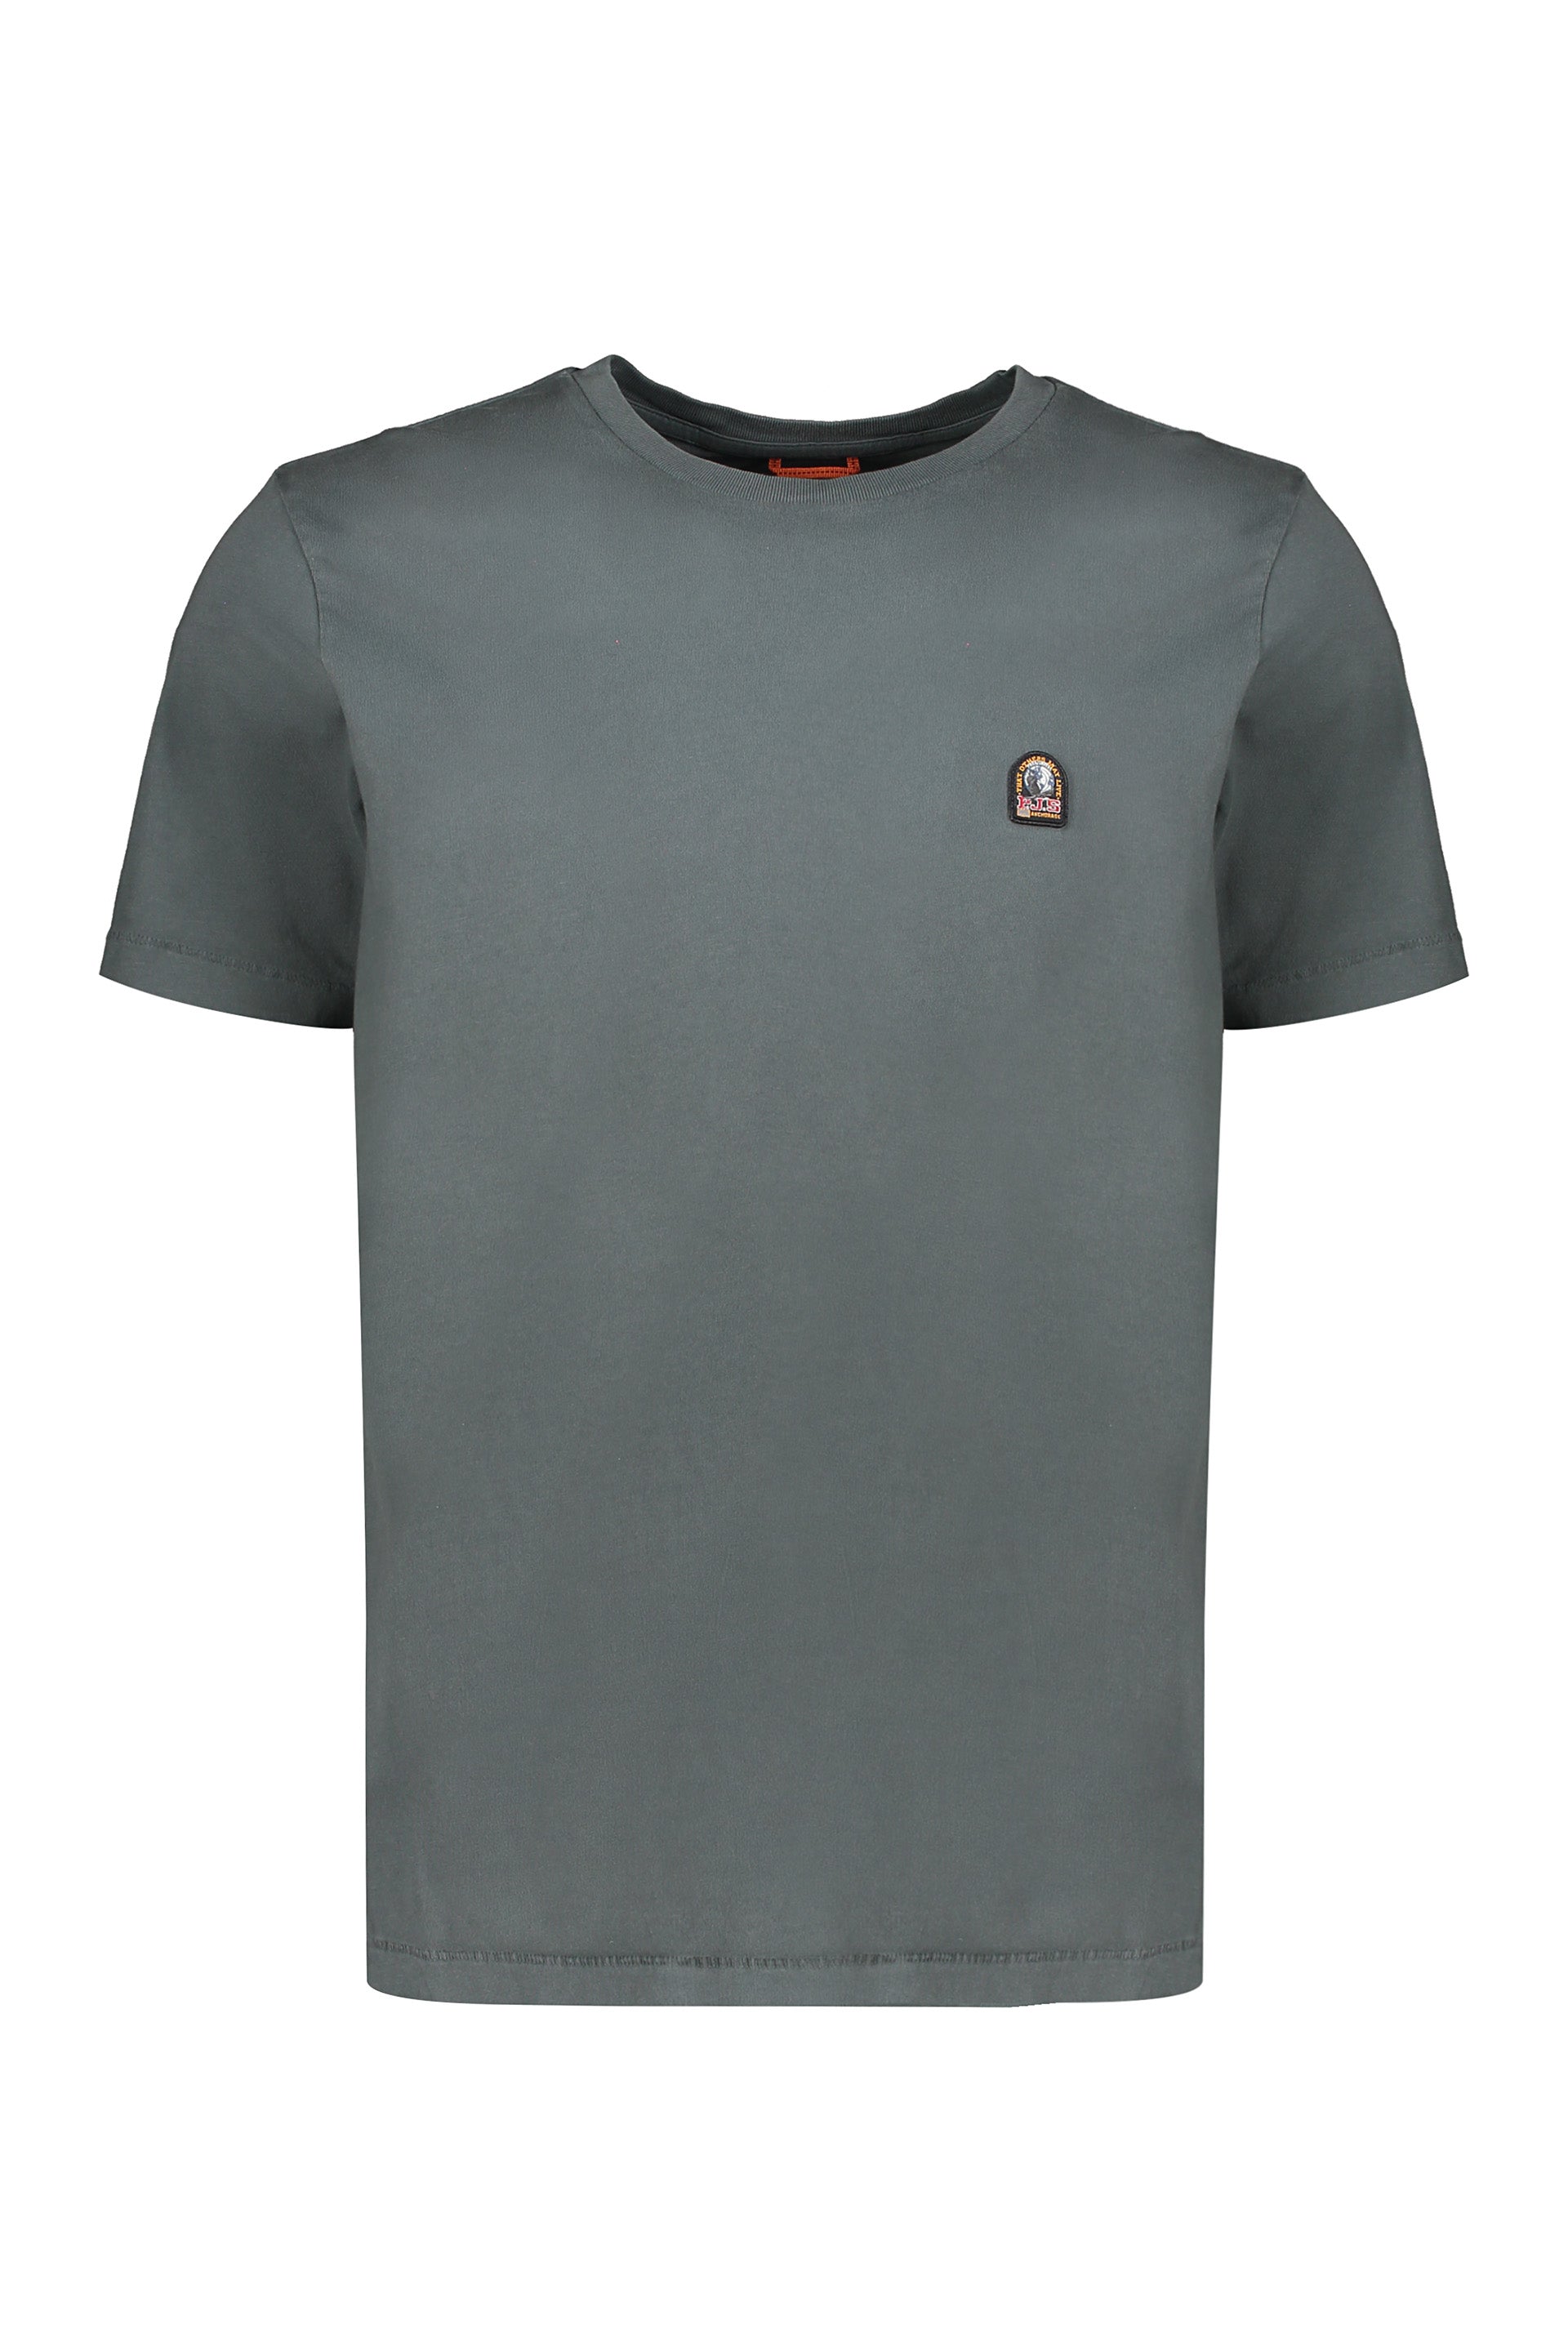 Parajumpers-OUTLET-SALE-Cotton-T-shirt-Shirts-L-ARCHIVE-COLLECTION_d947623f-4cb6-4e89-b2e9-527925ea132c.jpg